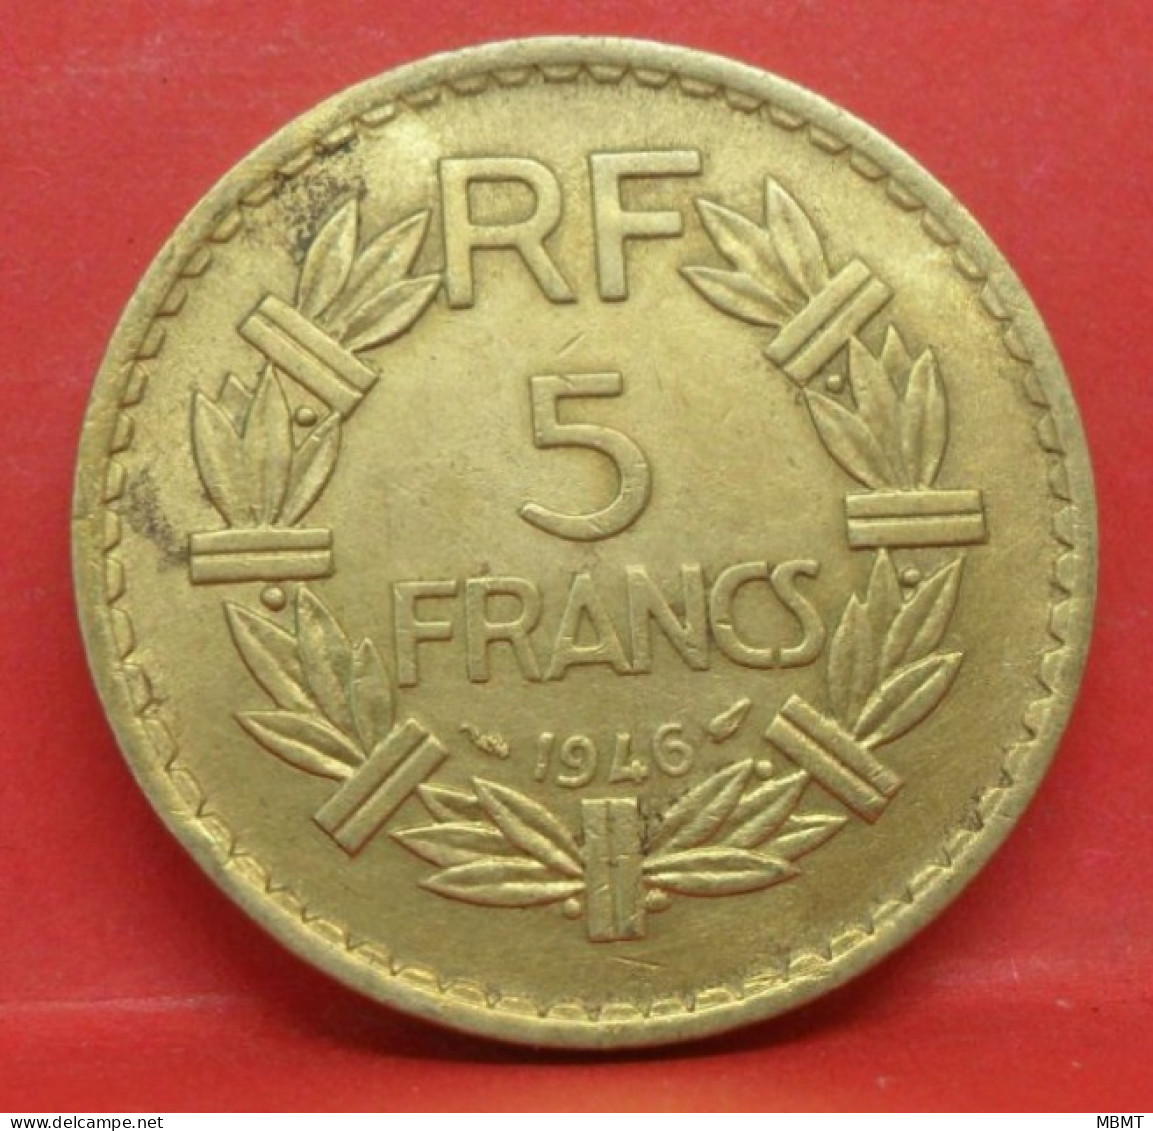 5 Francs Lavrillier 1946 - TTB+ - Pièce Monnaie France - Article N°1100 - 5 Francs